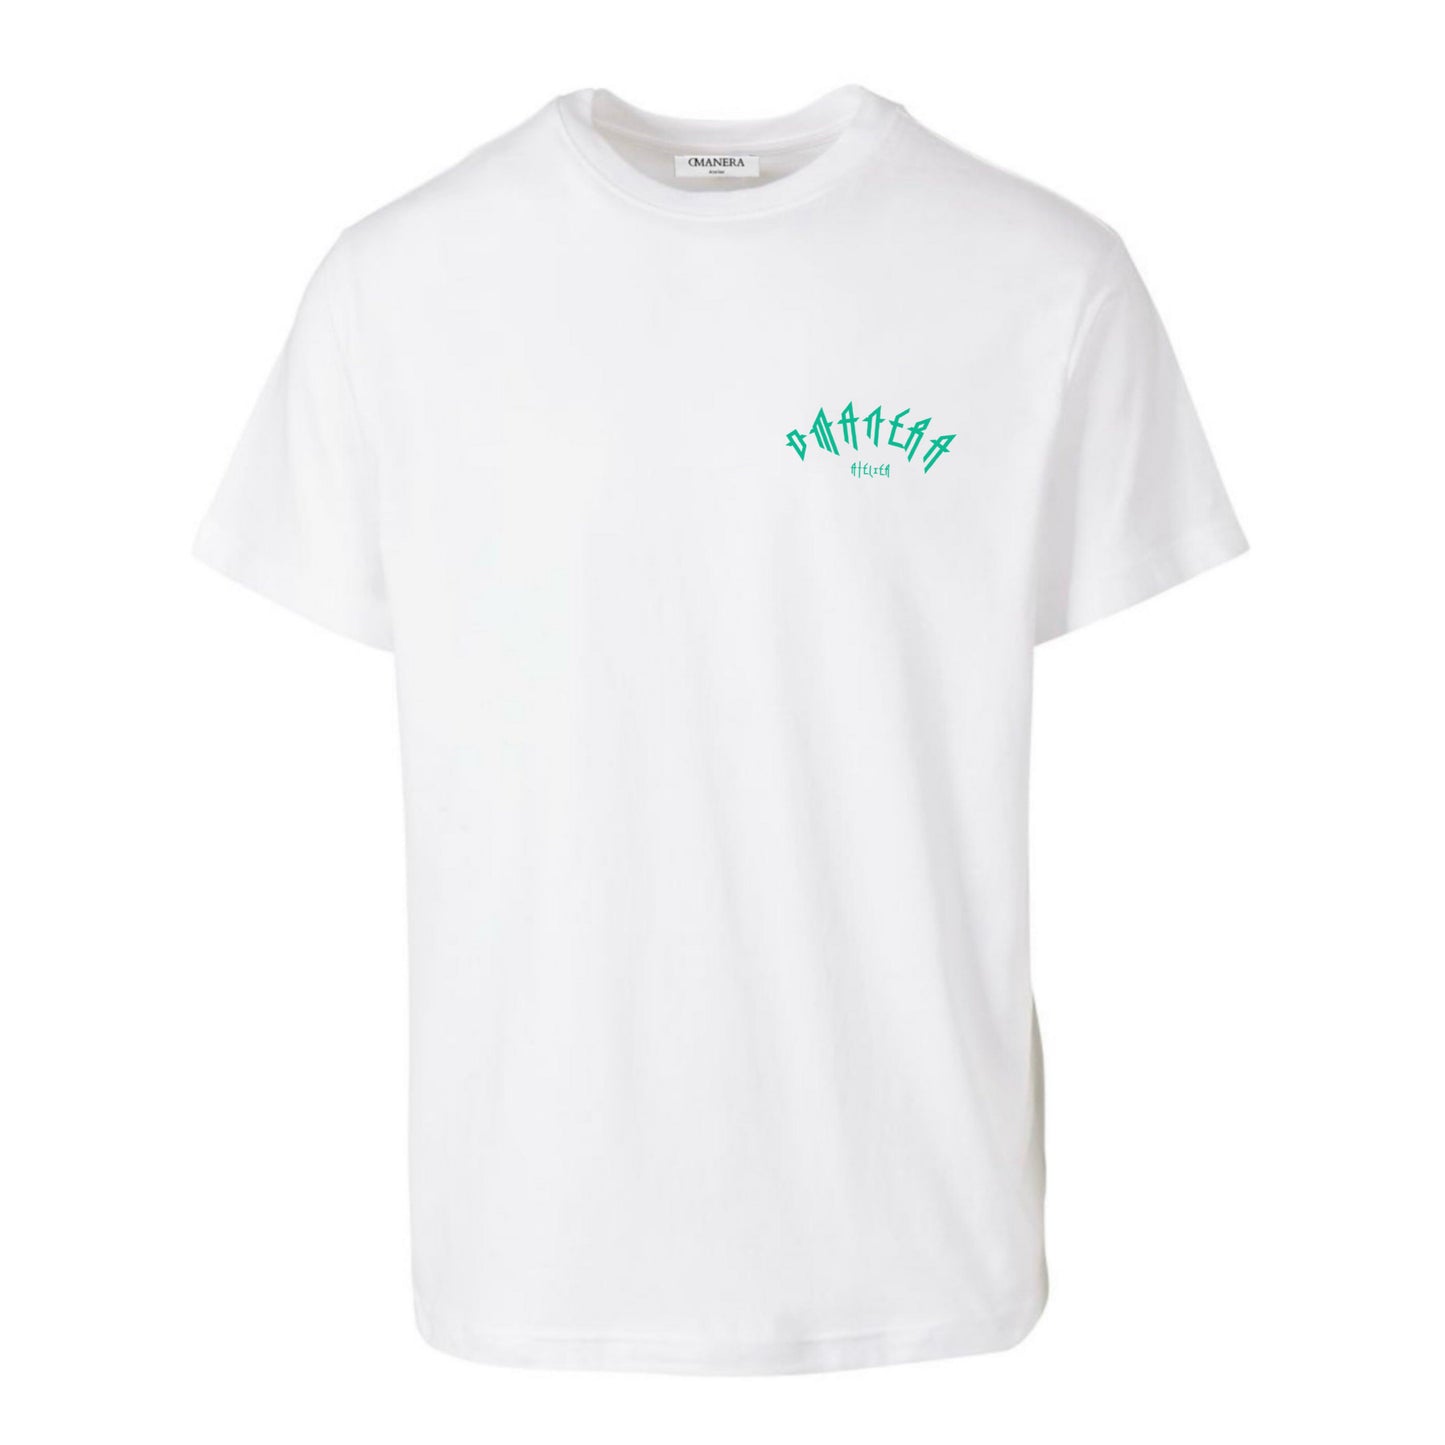 Premium Basic Shirt White/Green 190 g/m²